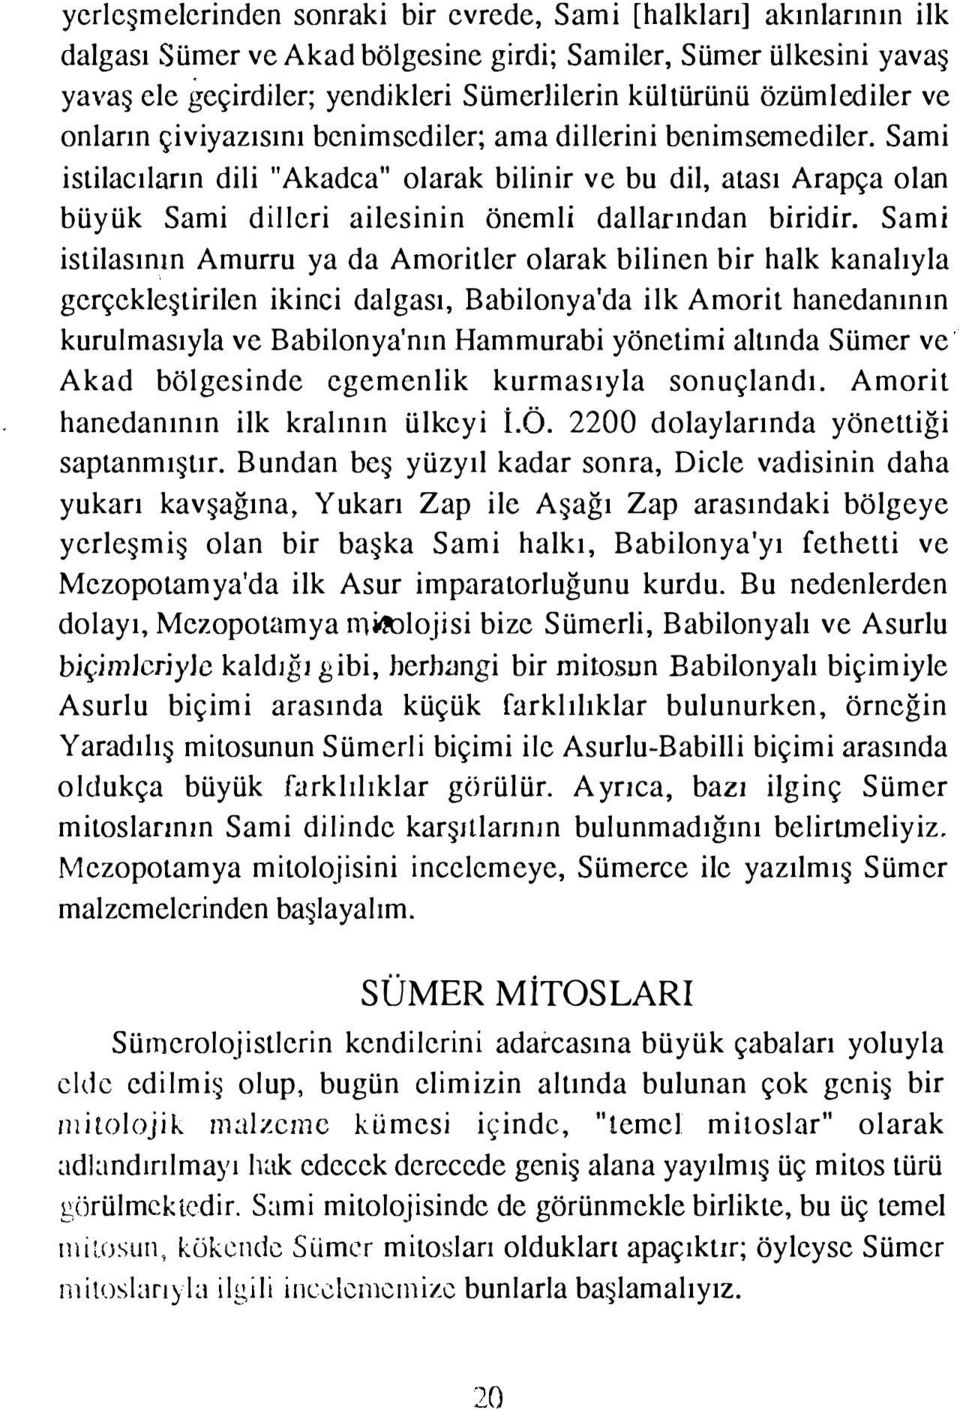 Sami istilacıların dili "Akadca" olarak bilinir ve bu dil, atası Arapça olan büyük Sami dilleri ailesinin önemli dallarından biridir.